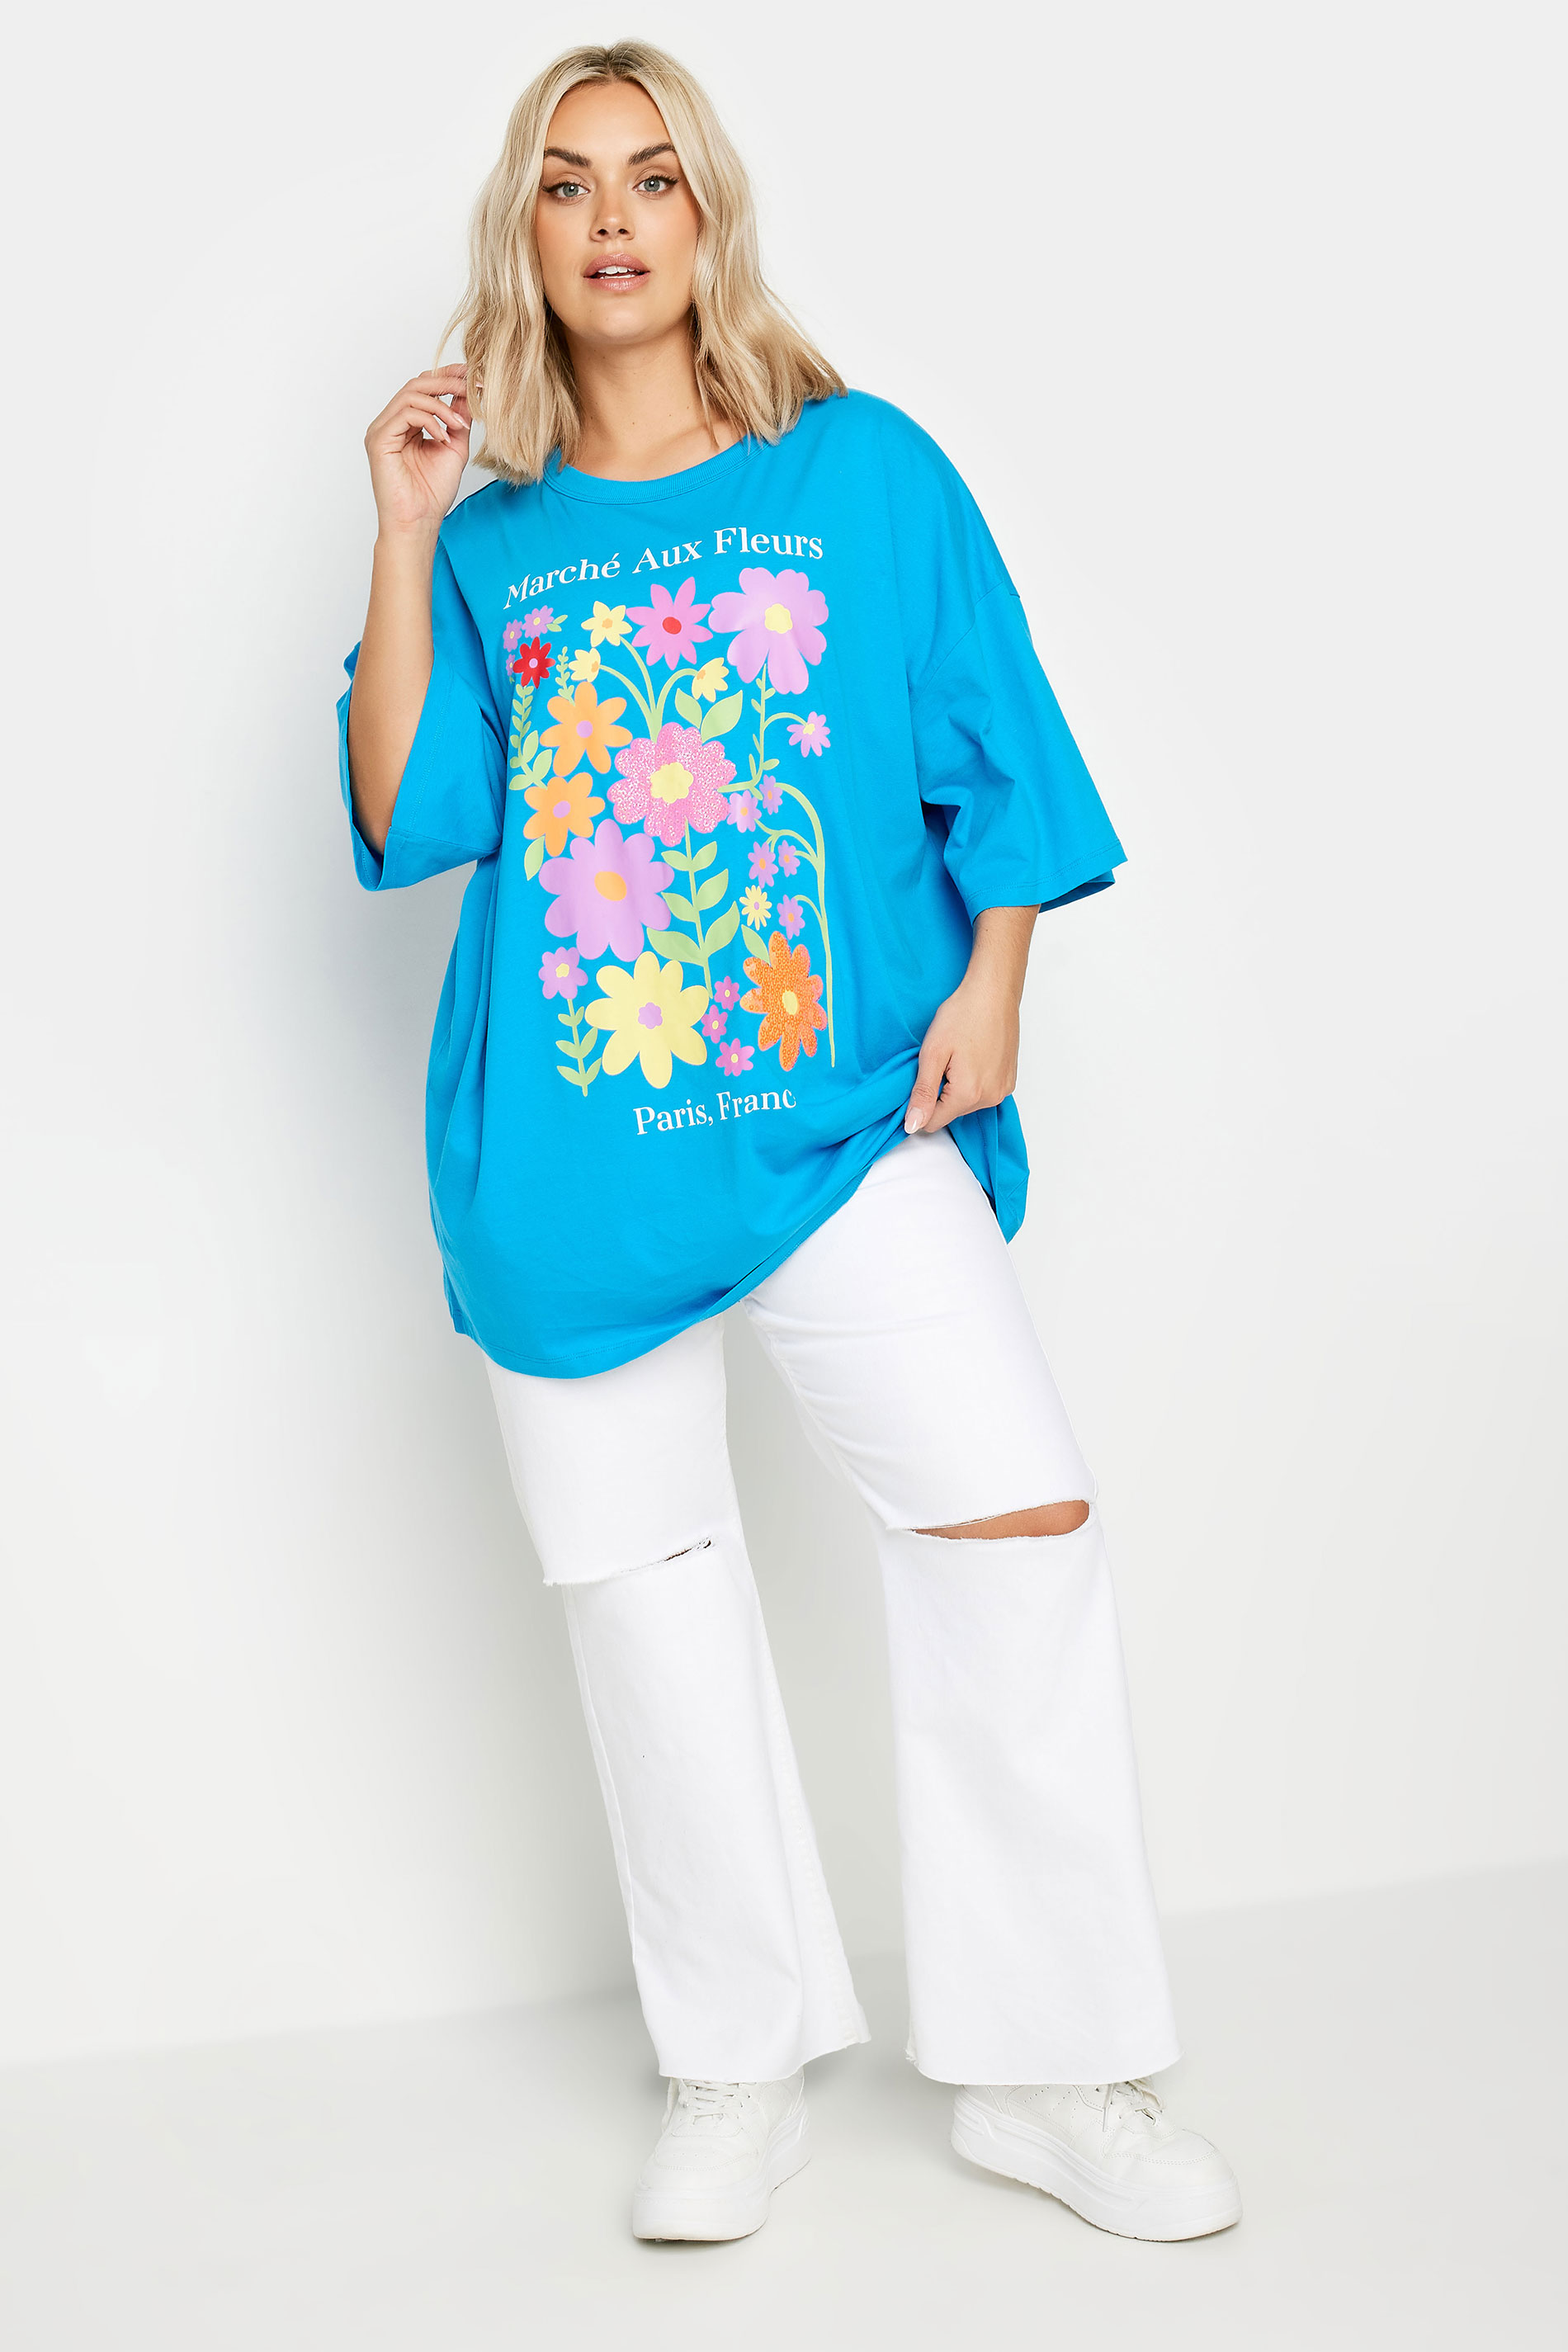 YOURS Plus Size Blue Floral Print 'Paris' Slogan Oversized T-Shirt | Yours Clothing 2